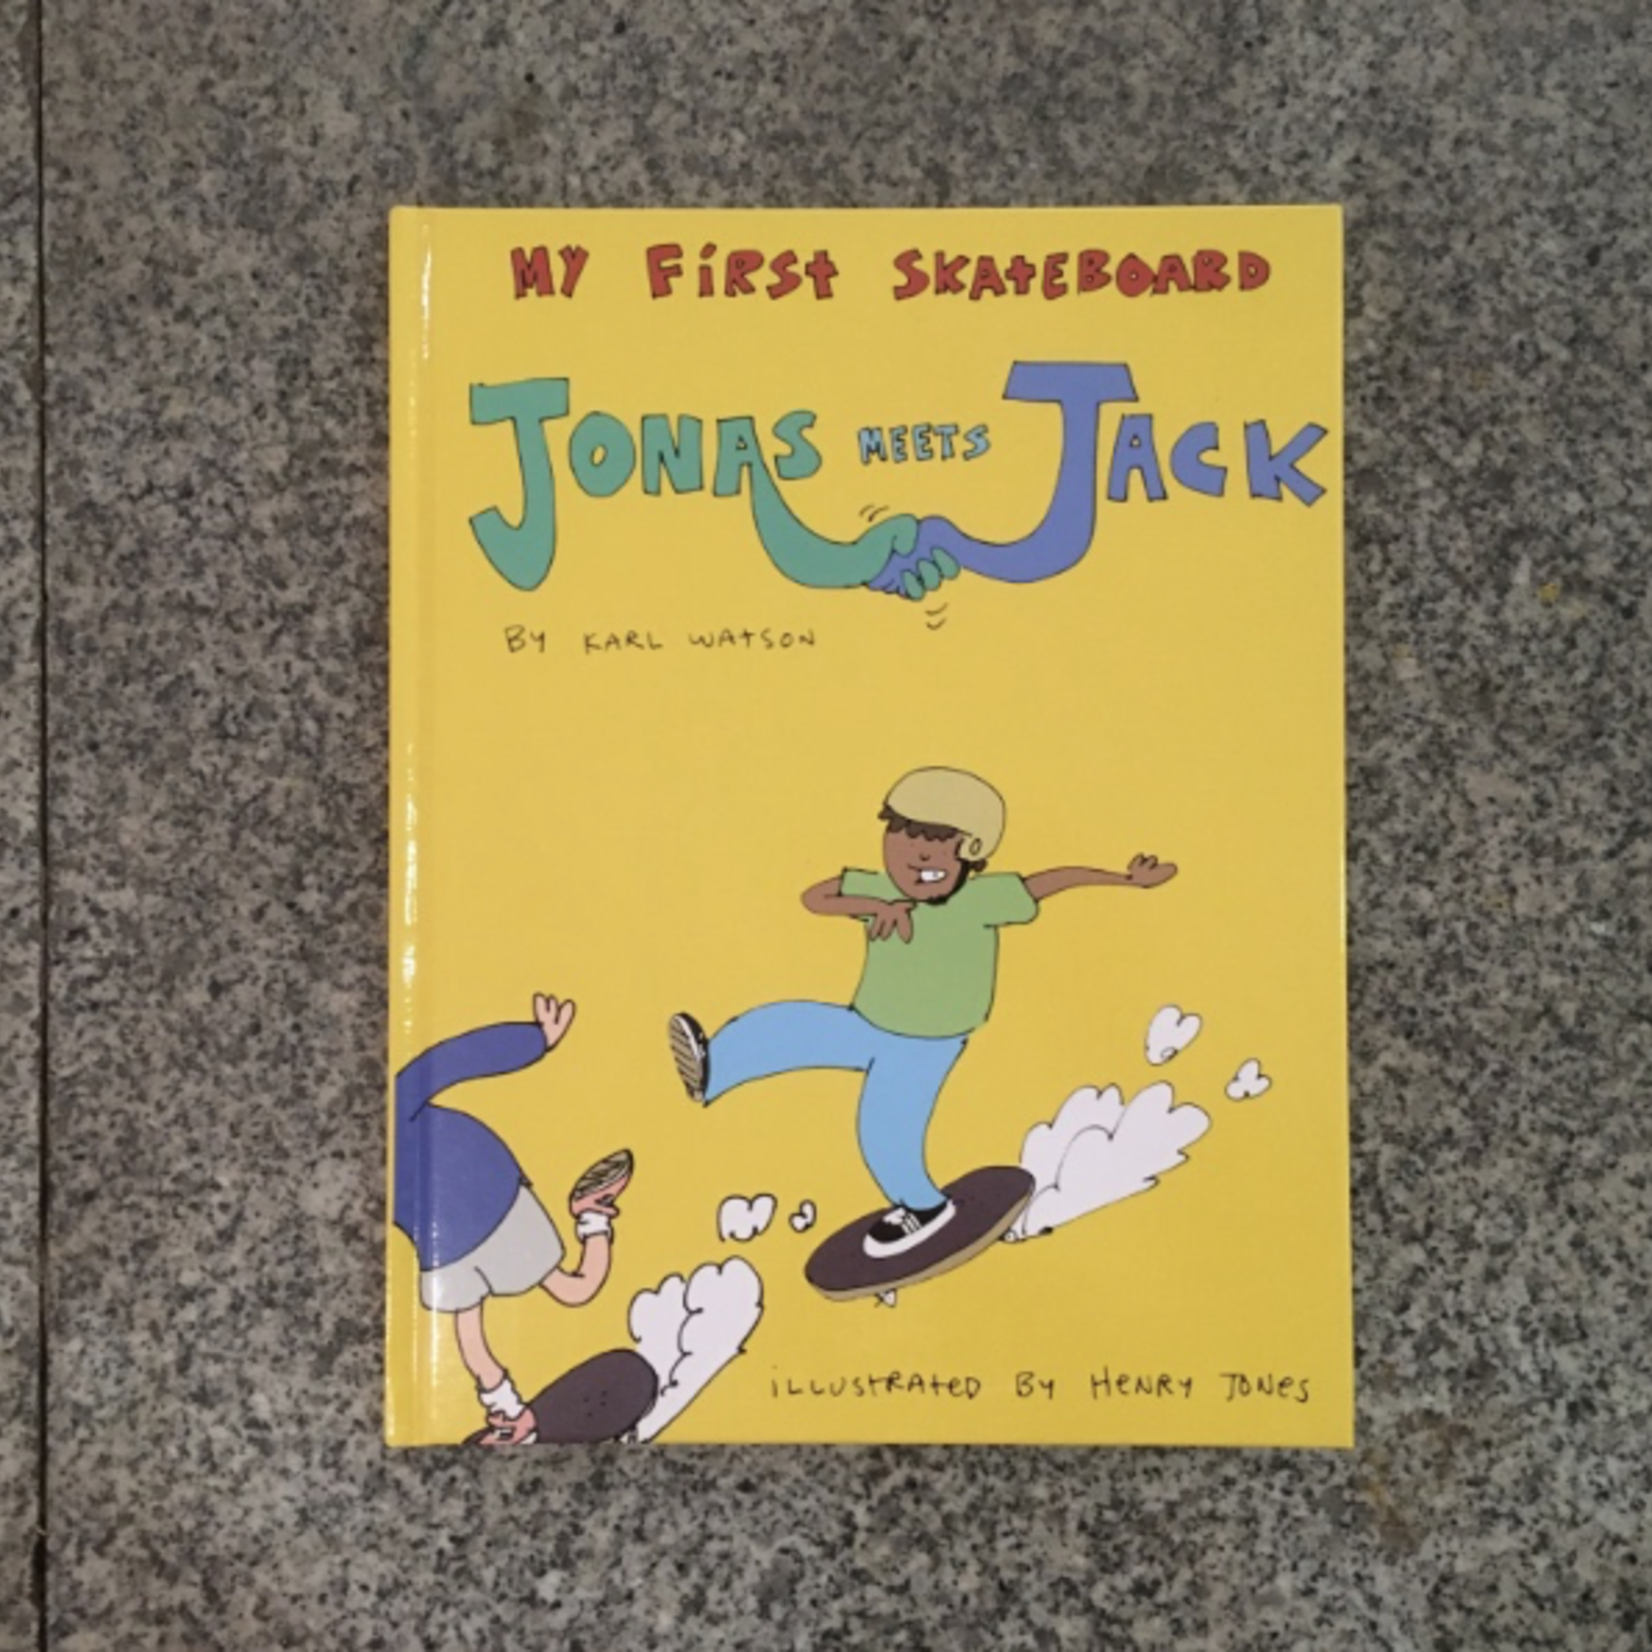 My First Skateboard Book - Jonas Meets Jack